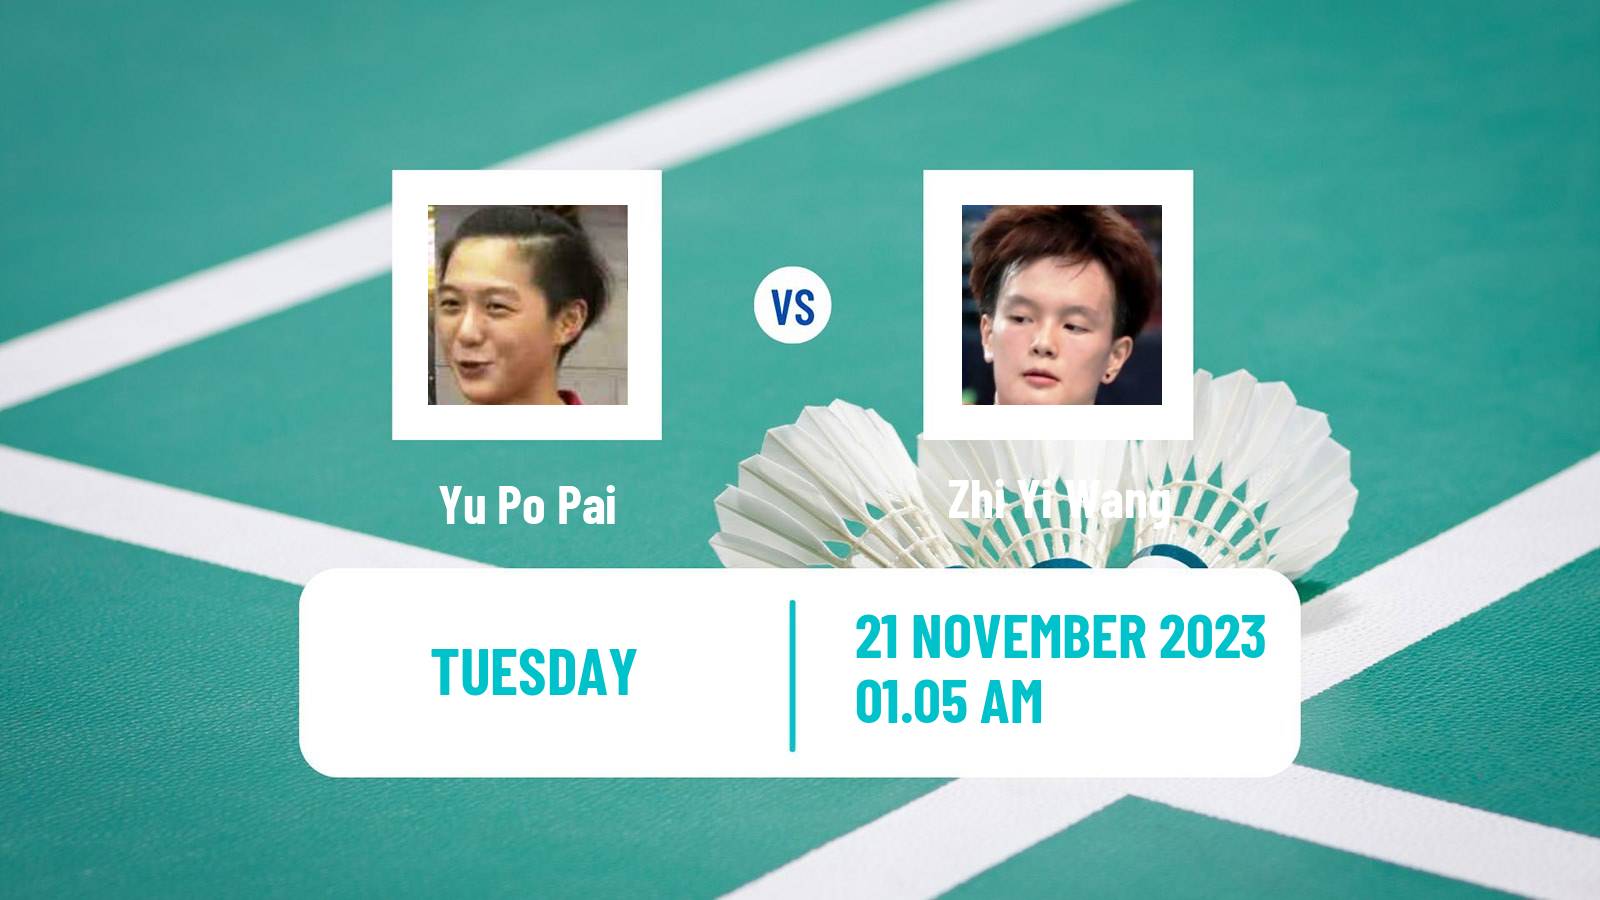 Badminton BWF World Tour China Masters 2 Women Yu Po Pai - Zhi Yi Wang